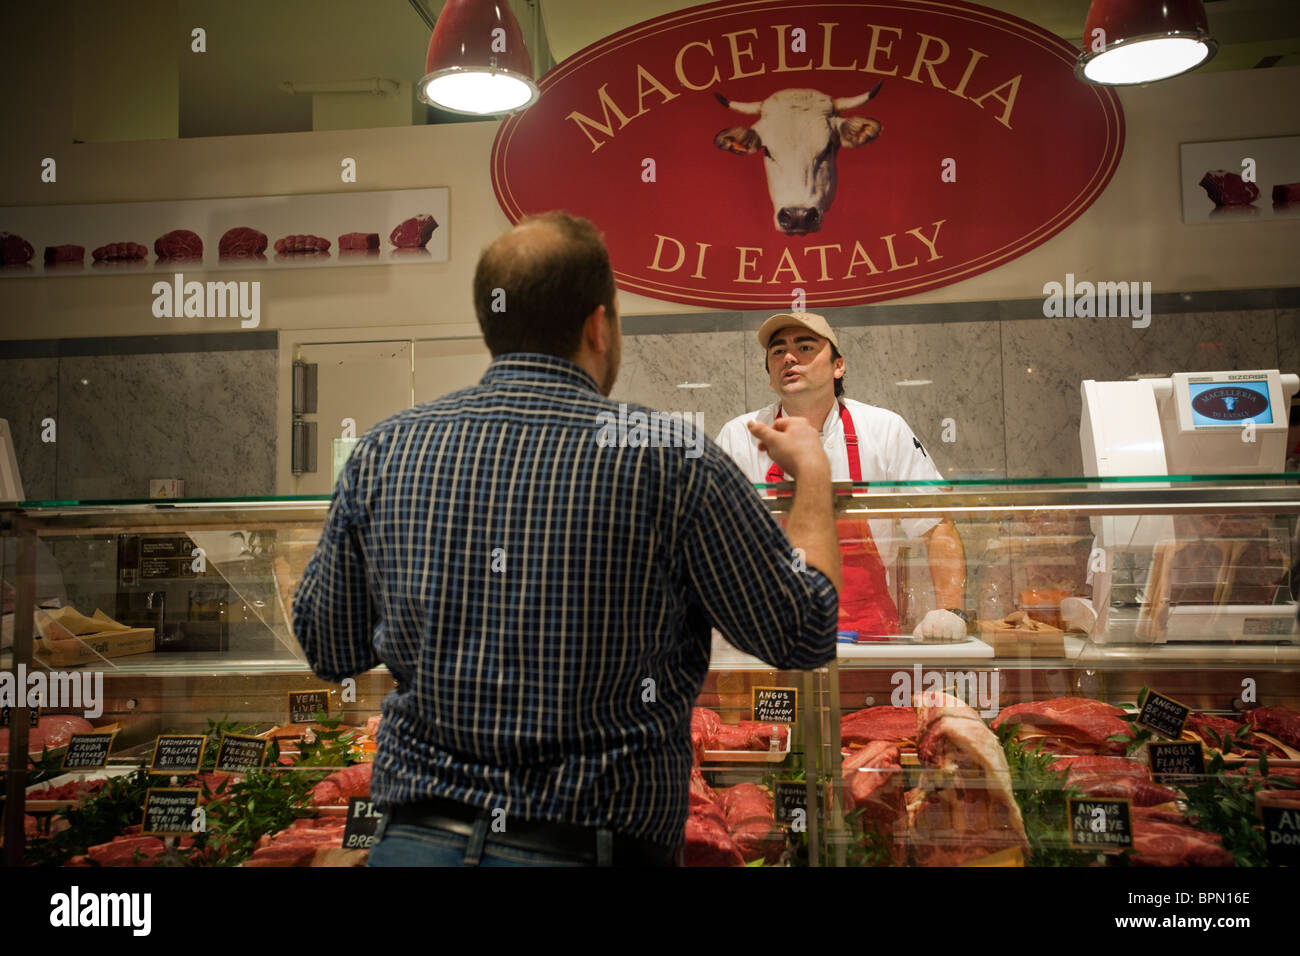 Macelleria macellerie a Eataly il cibo italiano e vino marketplace in New York Foto Stock